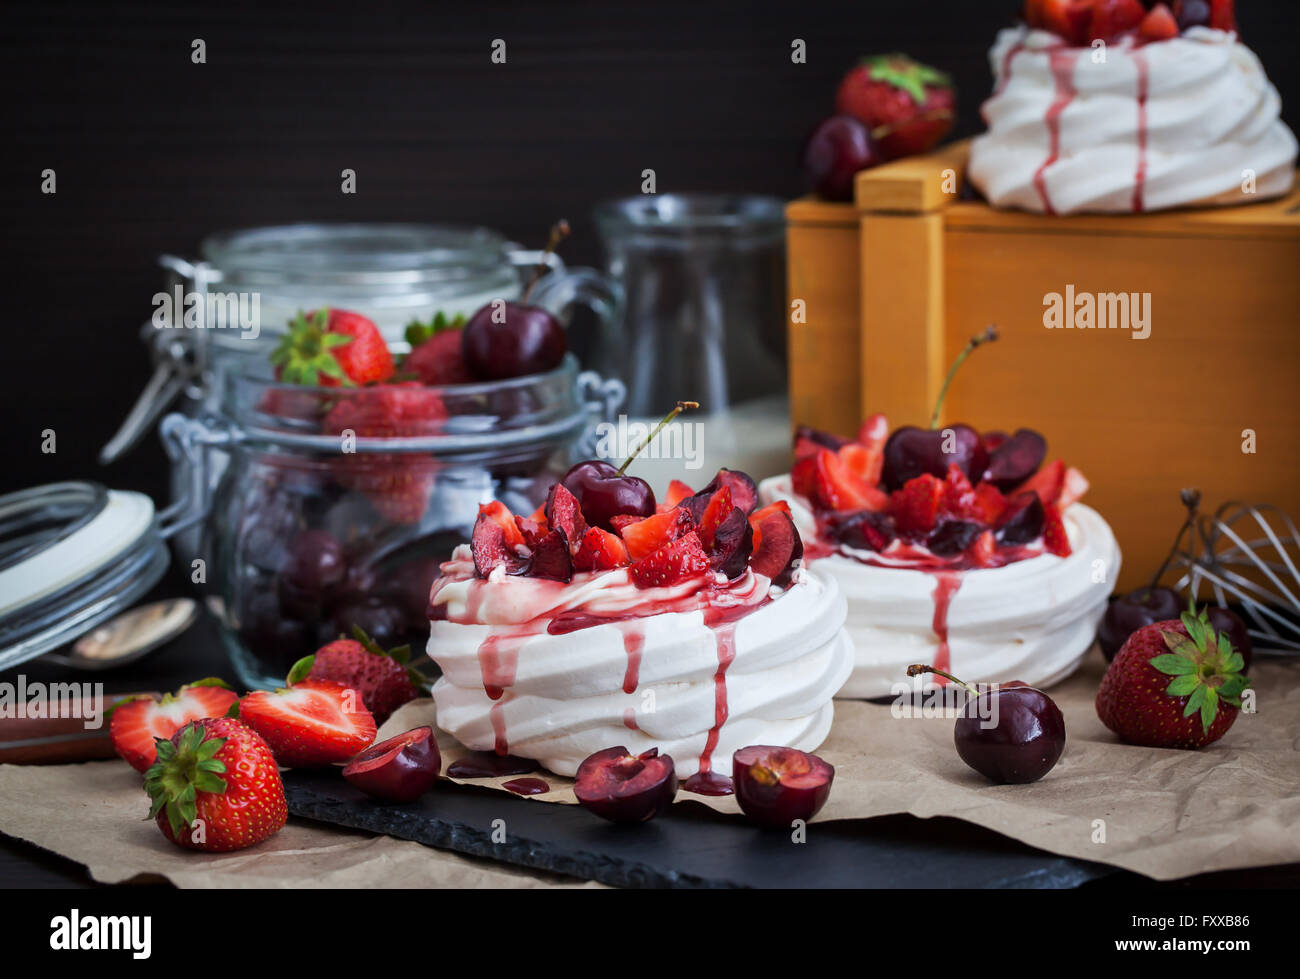 Partie de mini Pavlova meringuée gâteau décoré avec des fraises fraîches et cherry Banque D'Images